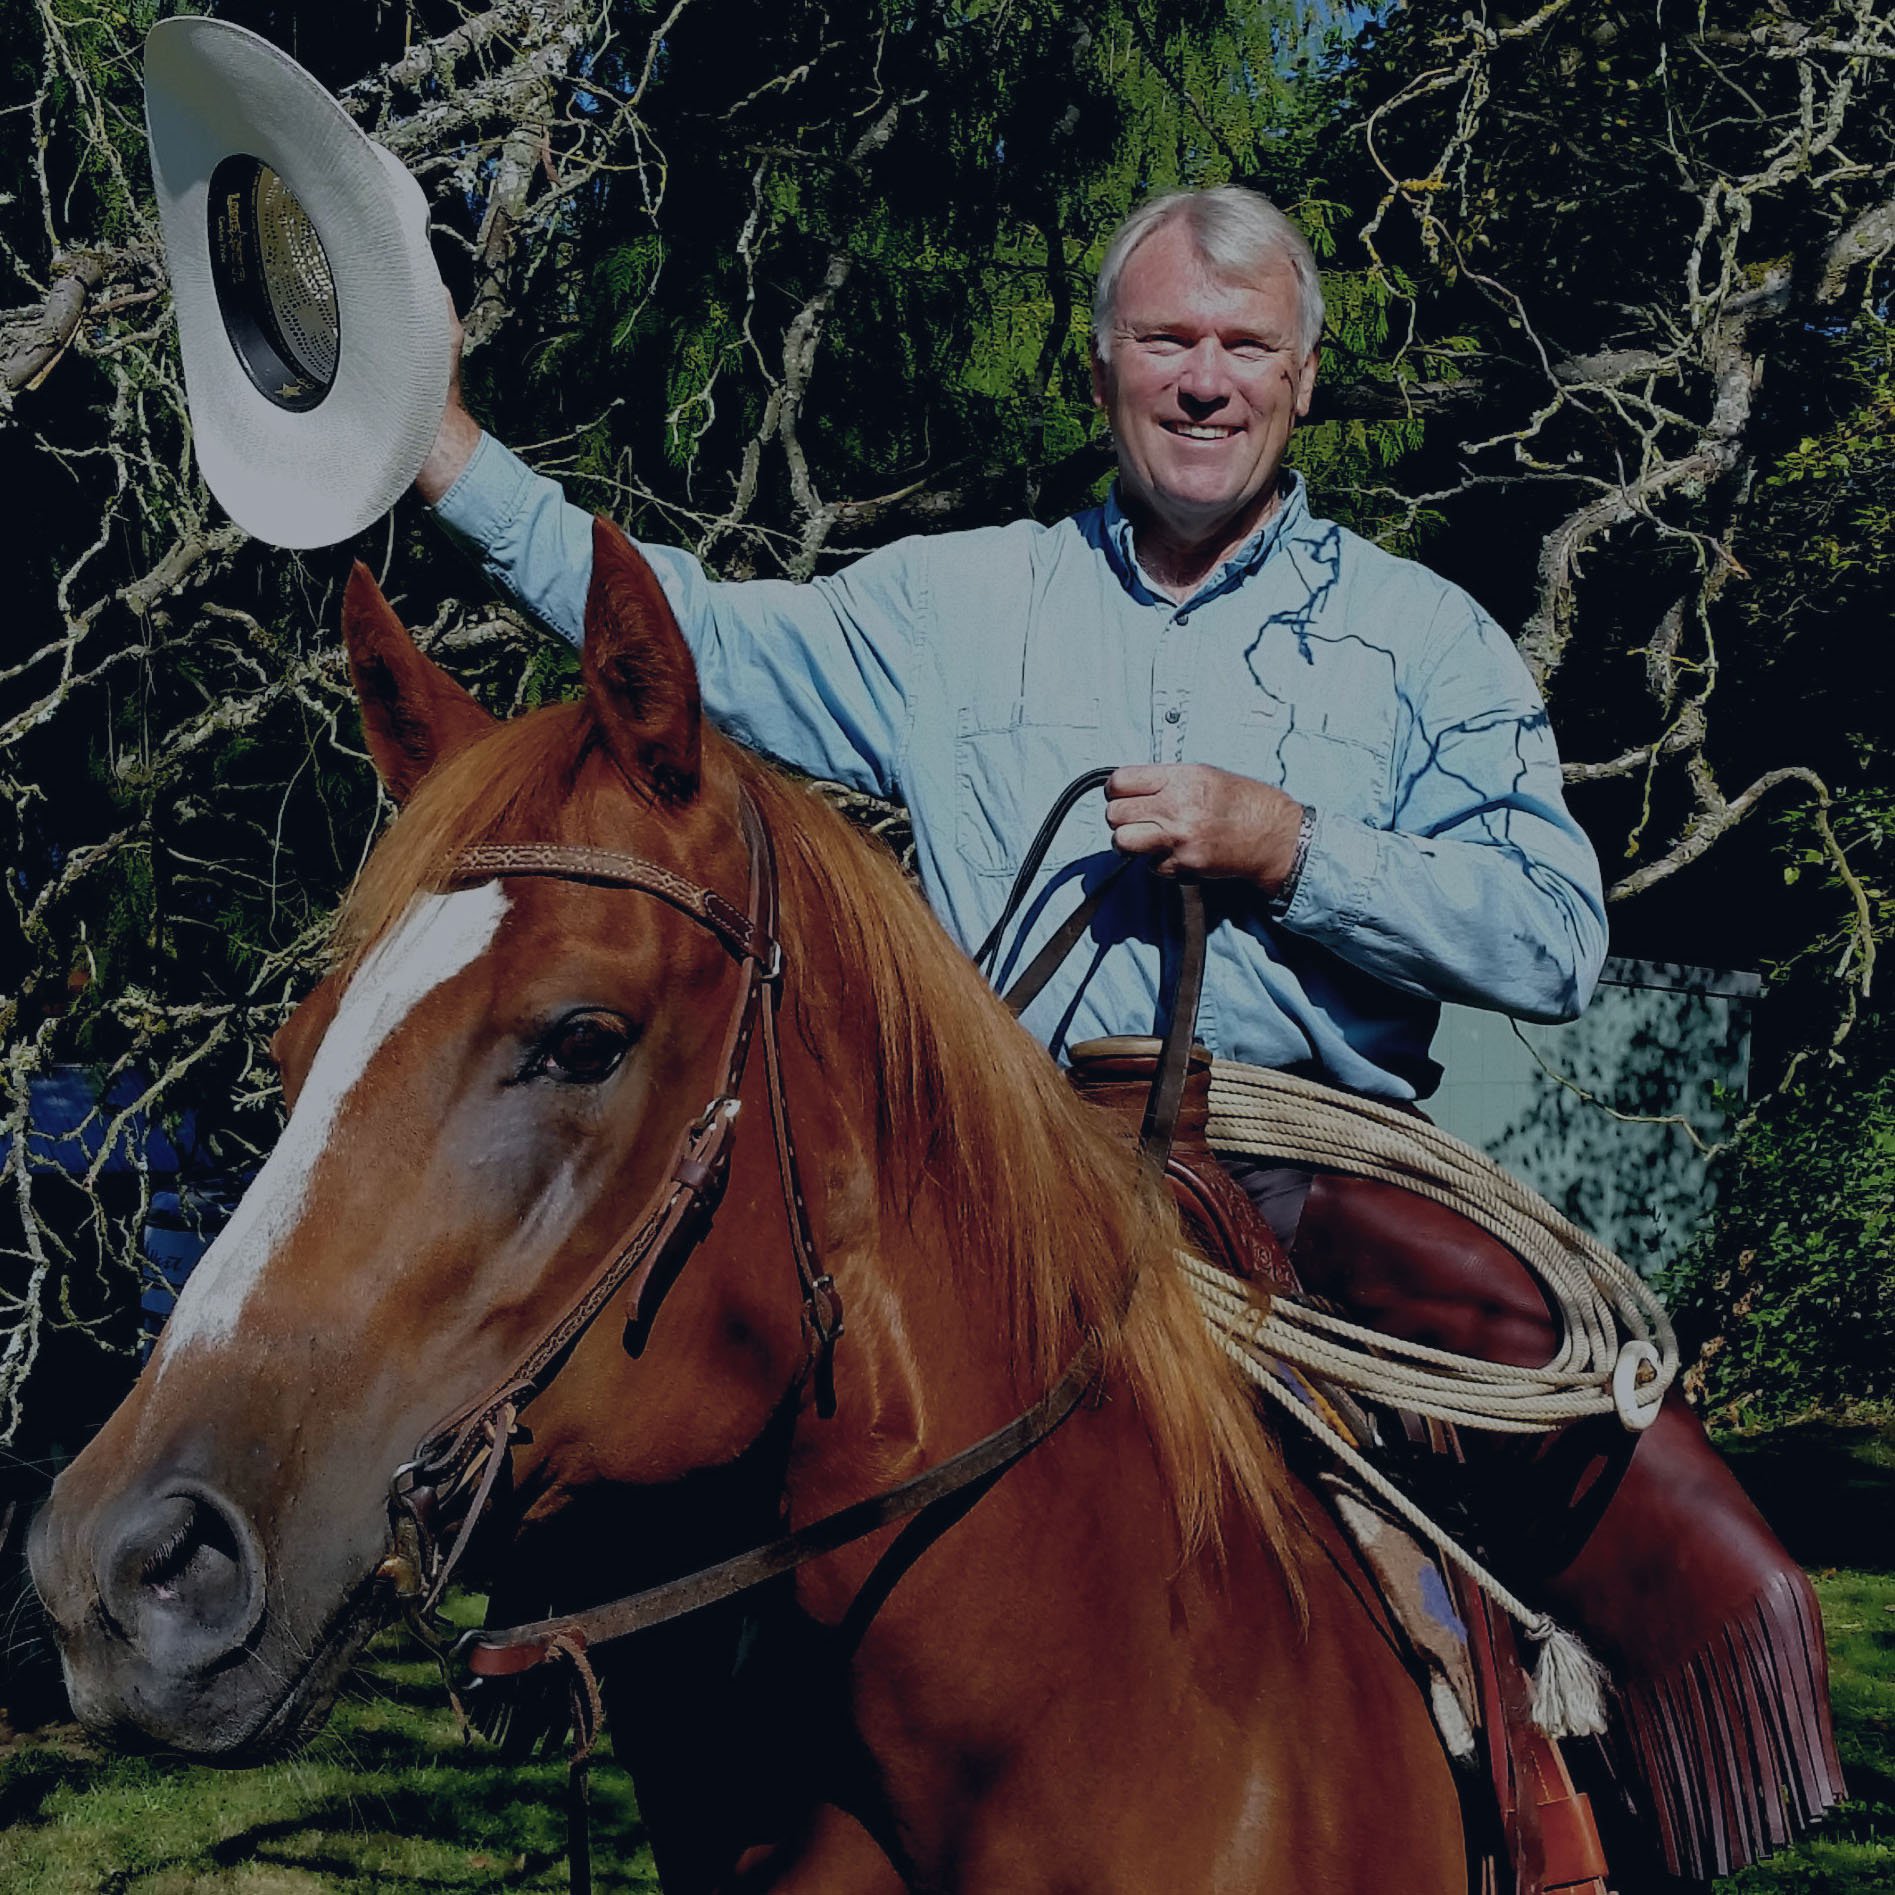 Brian K. Leonard on horseback